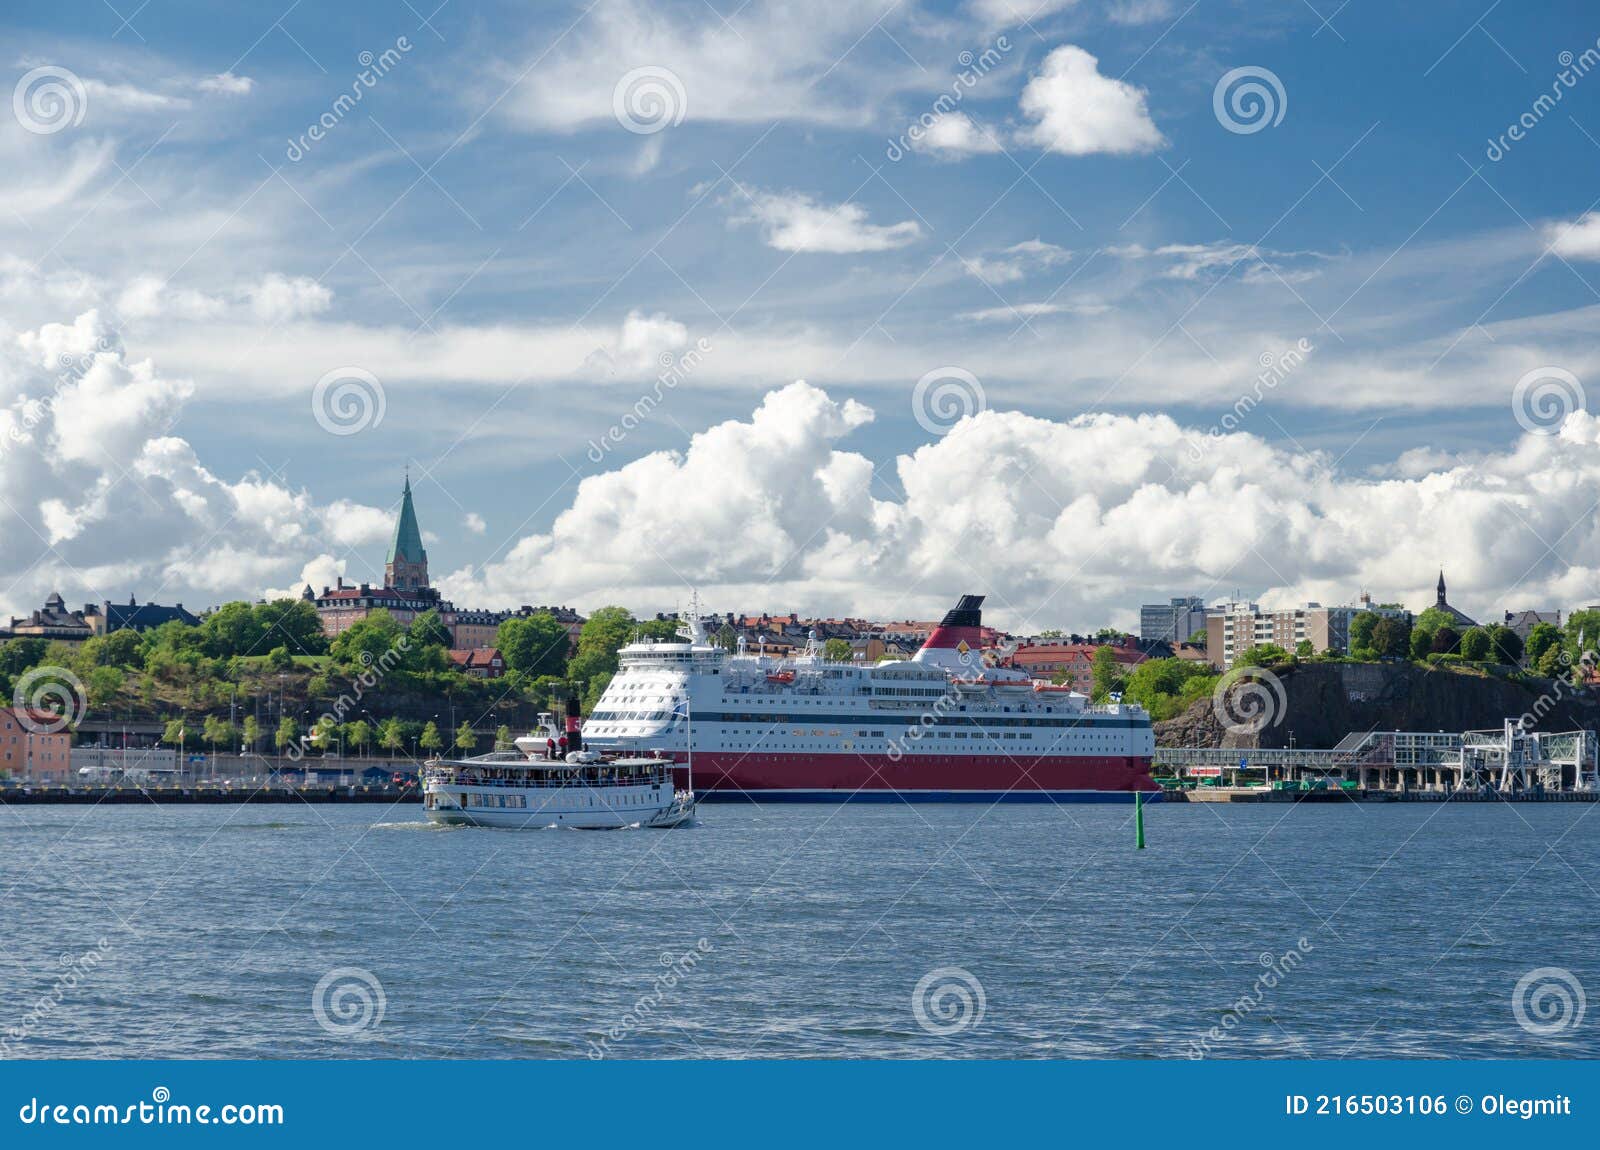 big passenger liner ship in harbor djurgarden stockholm sweden